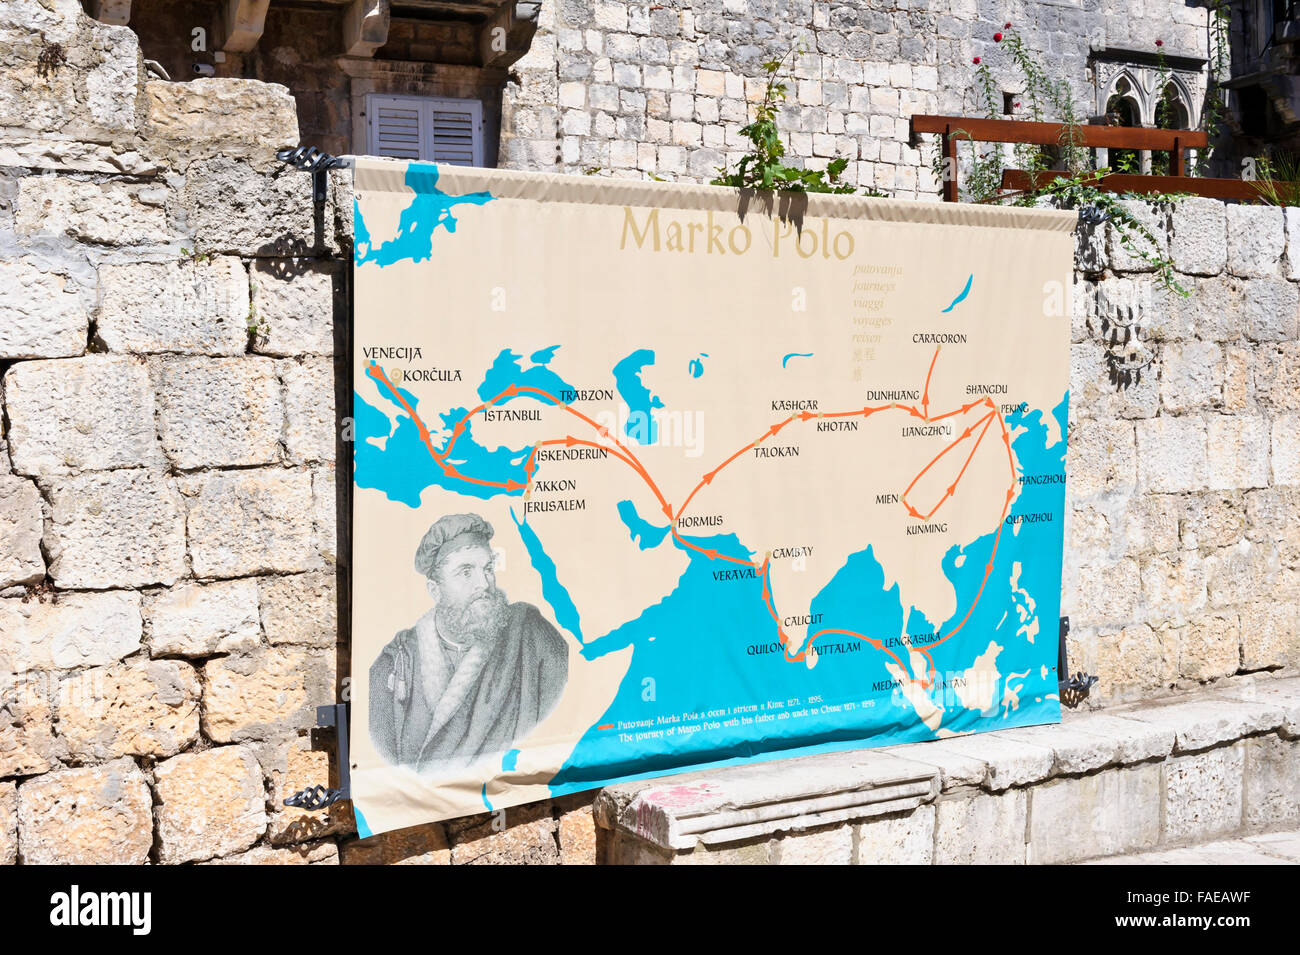 Eine Weltkarte nachzeichnen Marco Polo Reise auf dem Display auf eine kleine Mauer von seinem alten Haus, Korcula, Kroatien. Stockfoto